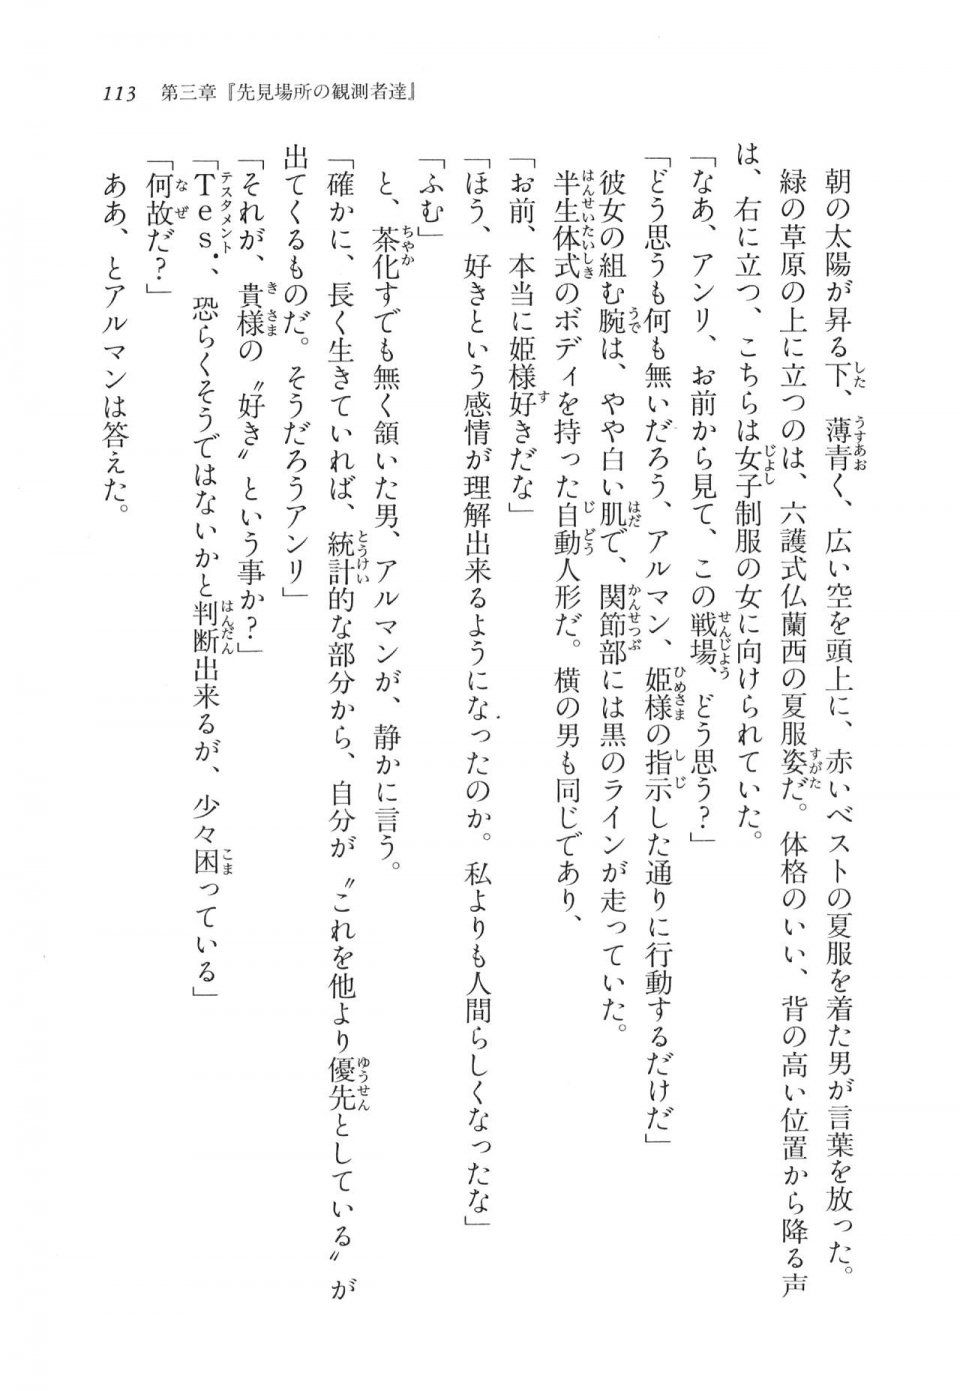 Kyoukai Senjou no Horizon LN Vol 11(5A) - Photo #113